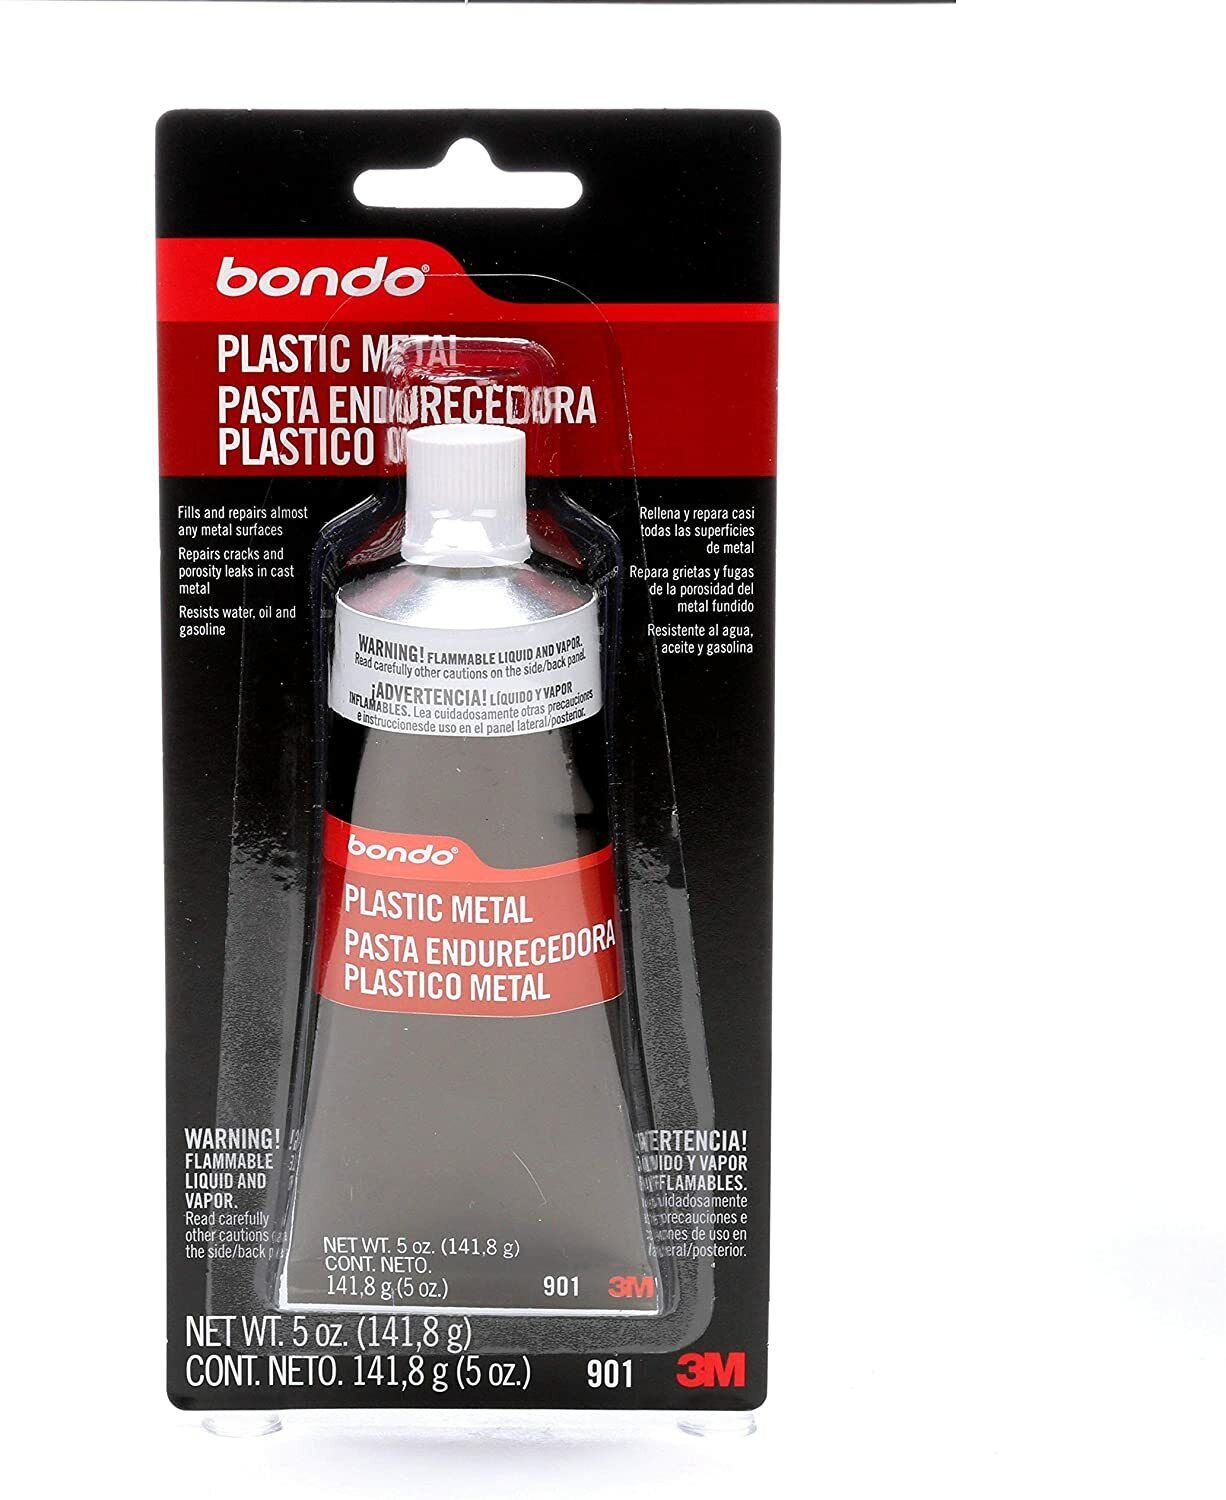 Bondo Plastic Metal Car Repair Tool, Seals & Fills Almost Any Metal Surface 5 oz